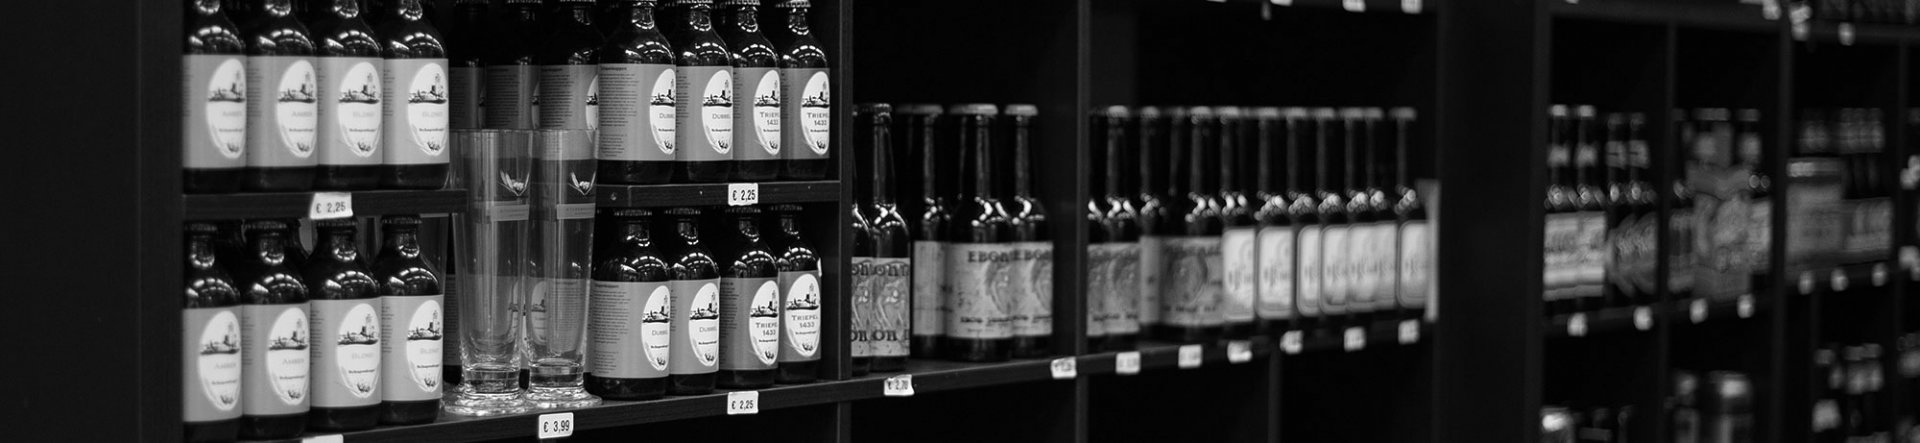 Header-bieren-StichtingStadsbrouwerijDordrecht